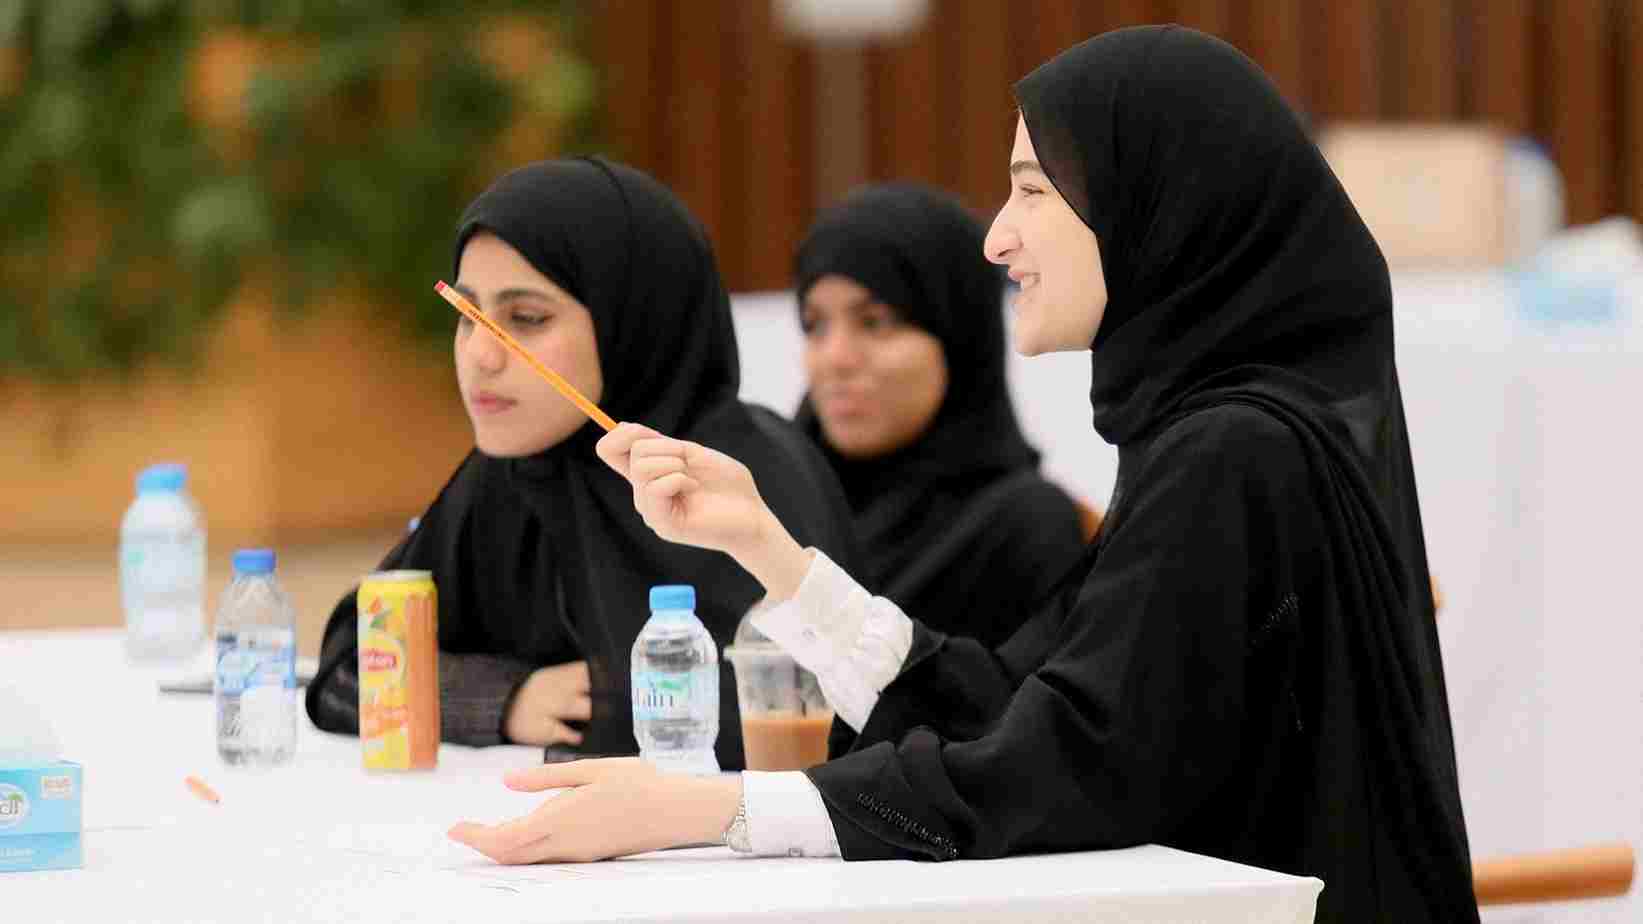 للطلاب السعوديين.. التحق بتخصص دراسات إسلامية بتكلفة منخفضة وبرامج معتمدة